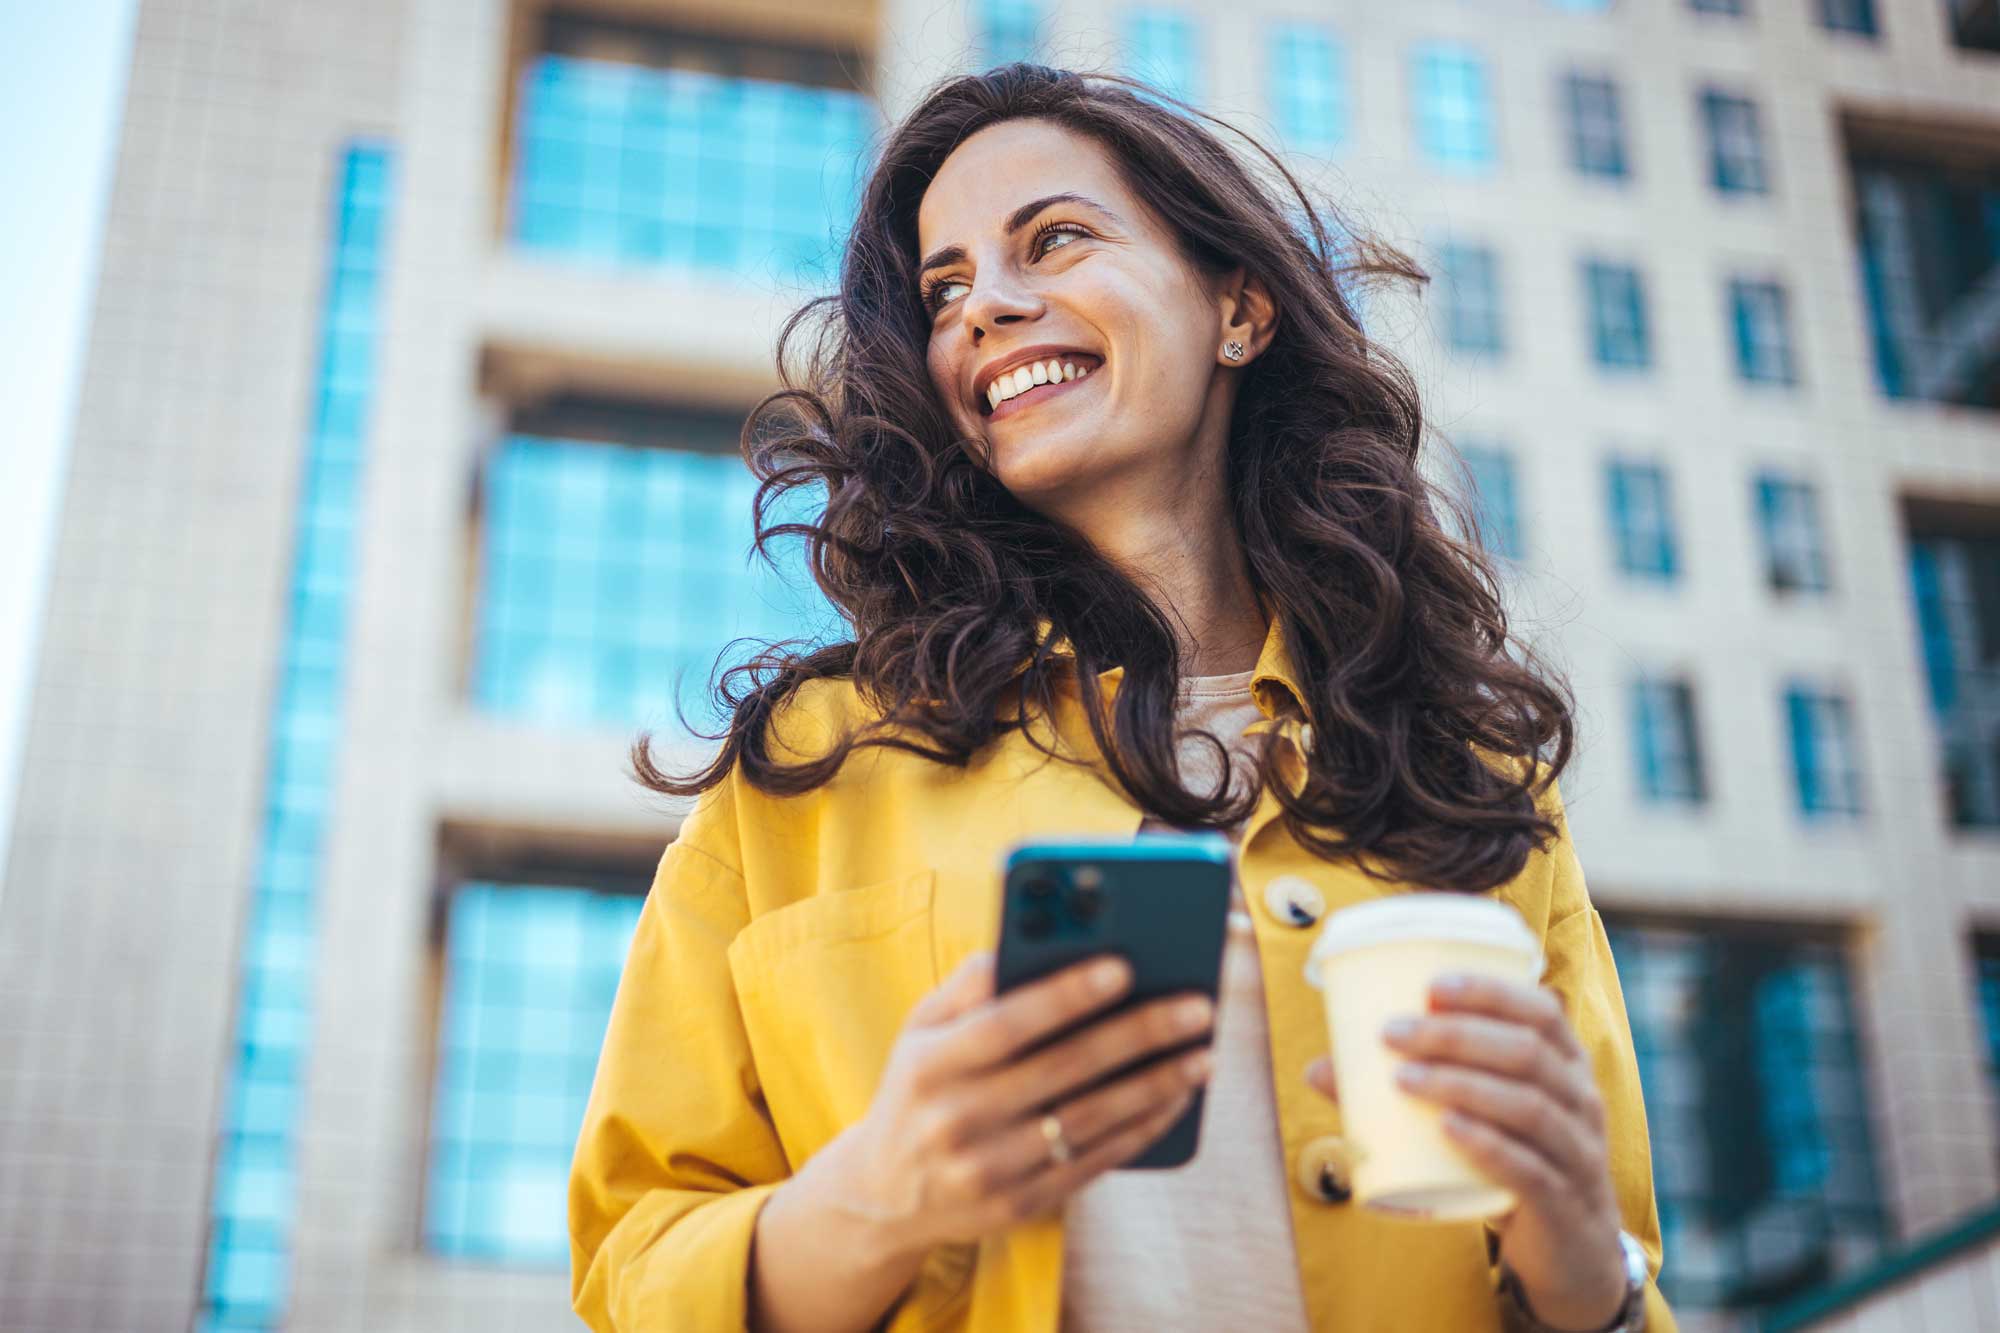 Junge Frau grinsend mit Smartphone in der Hand